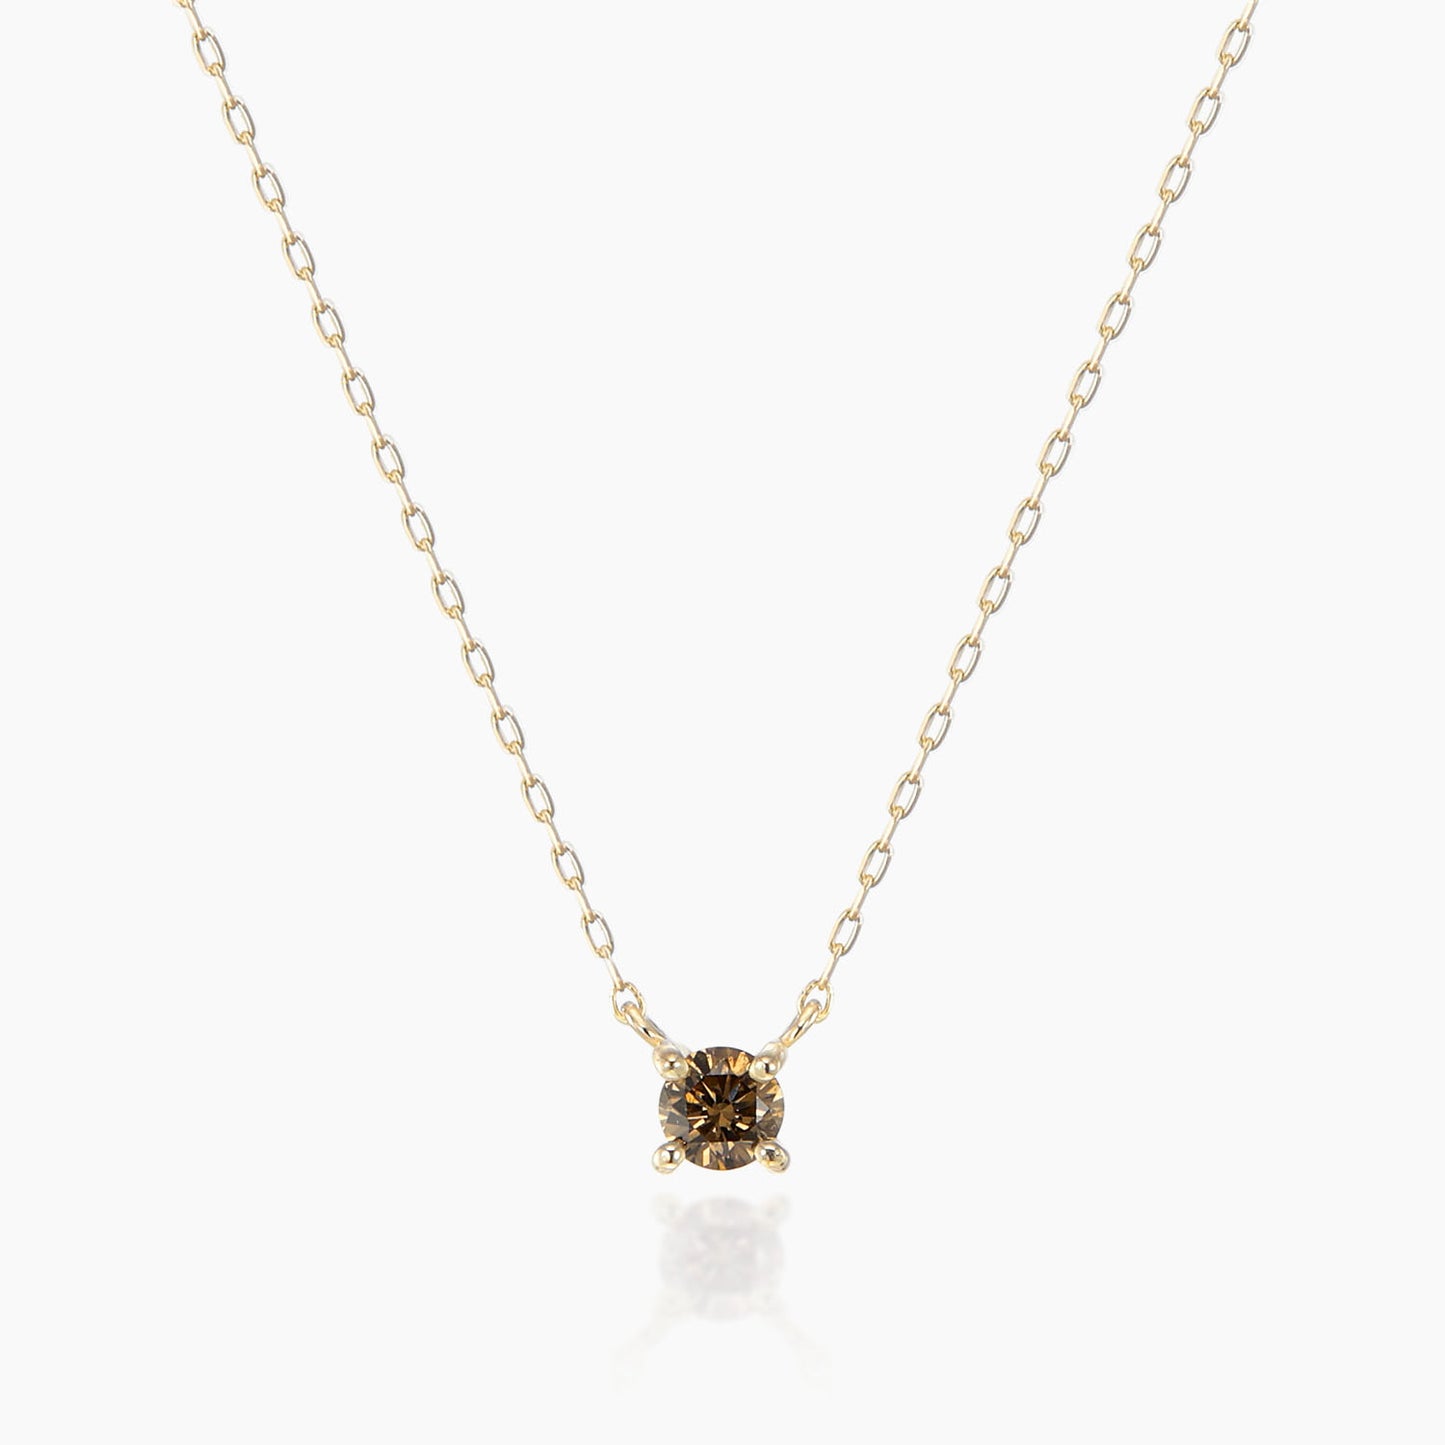 ネックレス [ブラウンダイヤ]/Necklace [Brown diamond]